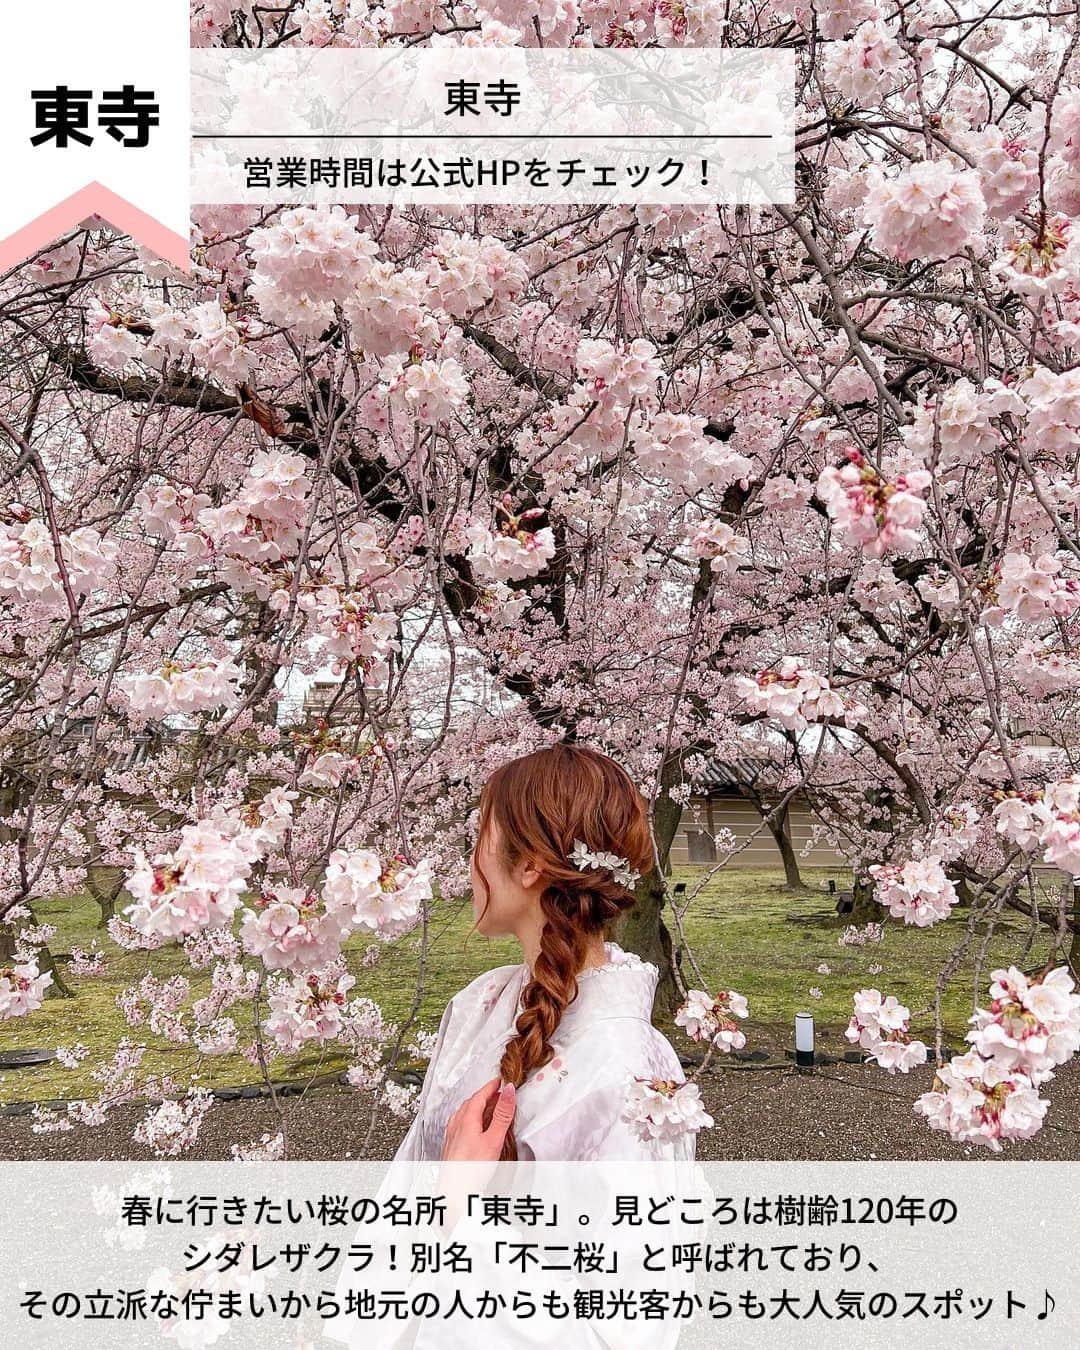 旅工房公式さんのインスタグラム写真 - (旅工房公式Instagram)「＼京都春旅で絶対行きたいスポットまとめ／  #京都 #京都女子旅   今回は、京都の春に行きたいおすすめスポットをご紹介します♪  観光情報やグルメまでまとめているので、ぜひ参考にして訪れてみてください＼(^o^)／ 💚    ━━━━━━━━━━━━━━━  ▽お写真ありがとうございます❣   📍二尊院 @kikko0630さん  小倉山のふもとにある「二尊院」！  色とりどりの花が浮かぶ花手水が人気です。  4/16まで境内に豪華なお花を飾り付けた「花の人力車」が期間限定で見られるのでこちらも要チェック！   【アクセス・案内】  嵐電「嵐山駅」徒歩15分  JR線「嵯峨嵐山駅」徒歩20分  営業時間：9:00～16:30　年中無休    📍岡崎神社 @ma.cocoroさん  うさぎ年の2023年に行きたい岡崎神社！  こちらでは「狛犬」ではなく「狛うさぎ」が鎮座しています♪  「うさぎみくじ」がずらっと並ぶ景色がとてもフォトジェニック◎   【アクセス・案内】  市バス32番、203番、93番、204番「岡崎神社前」下車後すぐ  市バス 5番「東天王町」下車　京阪　神宮丸太町駅下車後すぐ　  地下鉄東西線　蹴上駅下車後すぐ  営業時間：9:00〜17:00　年中無休   📍東寺 @ nakamuraamさん  春に行きたい桜の名所「東寺」。見どころは樹齢120年のシダレザクラ！  別名「不二桜」と呼ばれており、その立派な佇まいから地元の人からも観光客からも大人気のスポット♪   【アクセス・案内】  「京都駅」八条口より徒歩15分  「東寺駅」より徒歩10分  営業時間：営業時間は公式HPをチェック！   📍祇園ふじ寅 @ blenda_pechicoさん  古民家のような和の雰囲気が大人気のカフェ。  ランチ限定の「季節野菜のせいろごはん」が人気メニュー！  無くなり次第終了なので、早めの来店がおすすめです。   【アクセス・案内】  京阪祇園四条駅1番出口より徒歩約1分  阪急京都河原町駅1B出口より徒歩約6分  市営地下鉄三条京阪駅2番出口より徒歩約15分  営業時間：［月、火、木、金］11:30～17:30  ［土、日、祝日］11:00～17:30   📍 ryu no hige @ __asamili__さん  京野菜をはじめ、こだわりをもって厳選された旬の食材を使ったフレンチレストラン！  見た目も美しく味も絶品なので、優雅なランチタイムを過ごせること間違いなし♪   【アクセス・案内】  「阪急京都線」烏丸駅　徒歩4分  「京都市営地下鉄烏丸線」四条駅　徒歩2分  営業時間：11:30〜13:30/17:30〜20:00   📍包華堂 @ nan_yun01さん  フルーツとあんこを自分で包むフルーツ大福専門店！  様々な種類のあんこから、自分の好きな3種類を選べるので、自分好みの組み合わせのフルーツ大福を楽しめますよ◎   【アクセス・案内】  烏丸御池駅より徒歩2分  営業時間：［平日］11:00～18:00（L.O.17:00）  ［土日祝］11:00～19:00（L.O.18:00）   ━━━━━━━━━━━━━━━    ※新型コロナウイルス感染拡大の影響により営業時間・内容は変更になる場合がございます。詳しくは各ホームページをご確認ください。    海外・国内問わず、素敵なスポットやグルメ、アイテムの写真にはぜひ #旅工房 や @tabikobo をタグ付けして下さい💕     #京都春旅 #京都スポット #京都カフェ #京都グルメ  #カフェ巡り #抹茶スイーツ #フルーツ大福  #包華堂  #和スイーツ #ryunohige #京都ランチ #祇園ふじ寅 #東寺  #京料理 #岡崎神社  #二尊院  #tabijyo #タビジョと繋がりたい #旅行計画 #旅したくなるフォト #旅行行きたい #旅行好きな人と繋がりたい #nexttrip #花手水 #旅工房国内 #国内旅行」3月20日 12時05分 - tabikobo